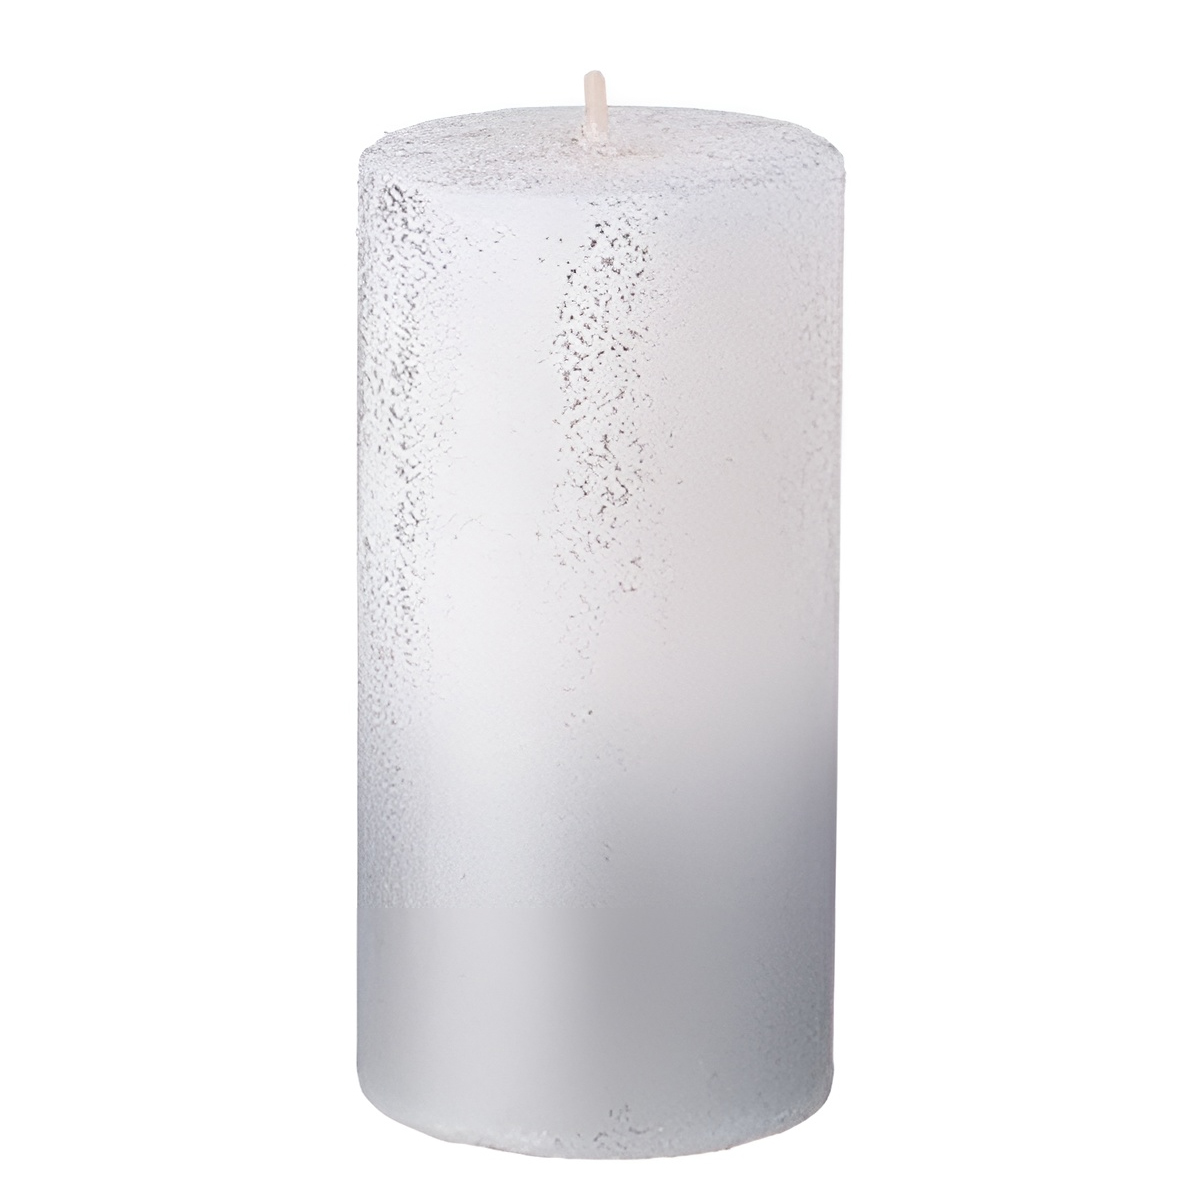 Свеча столбик Garda Decor 5x10см, цвет белый с серебром Garda Decor 315-328